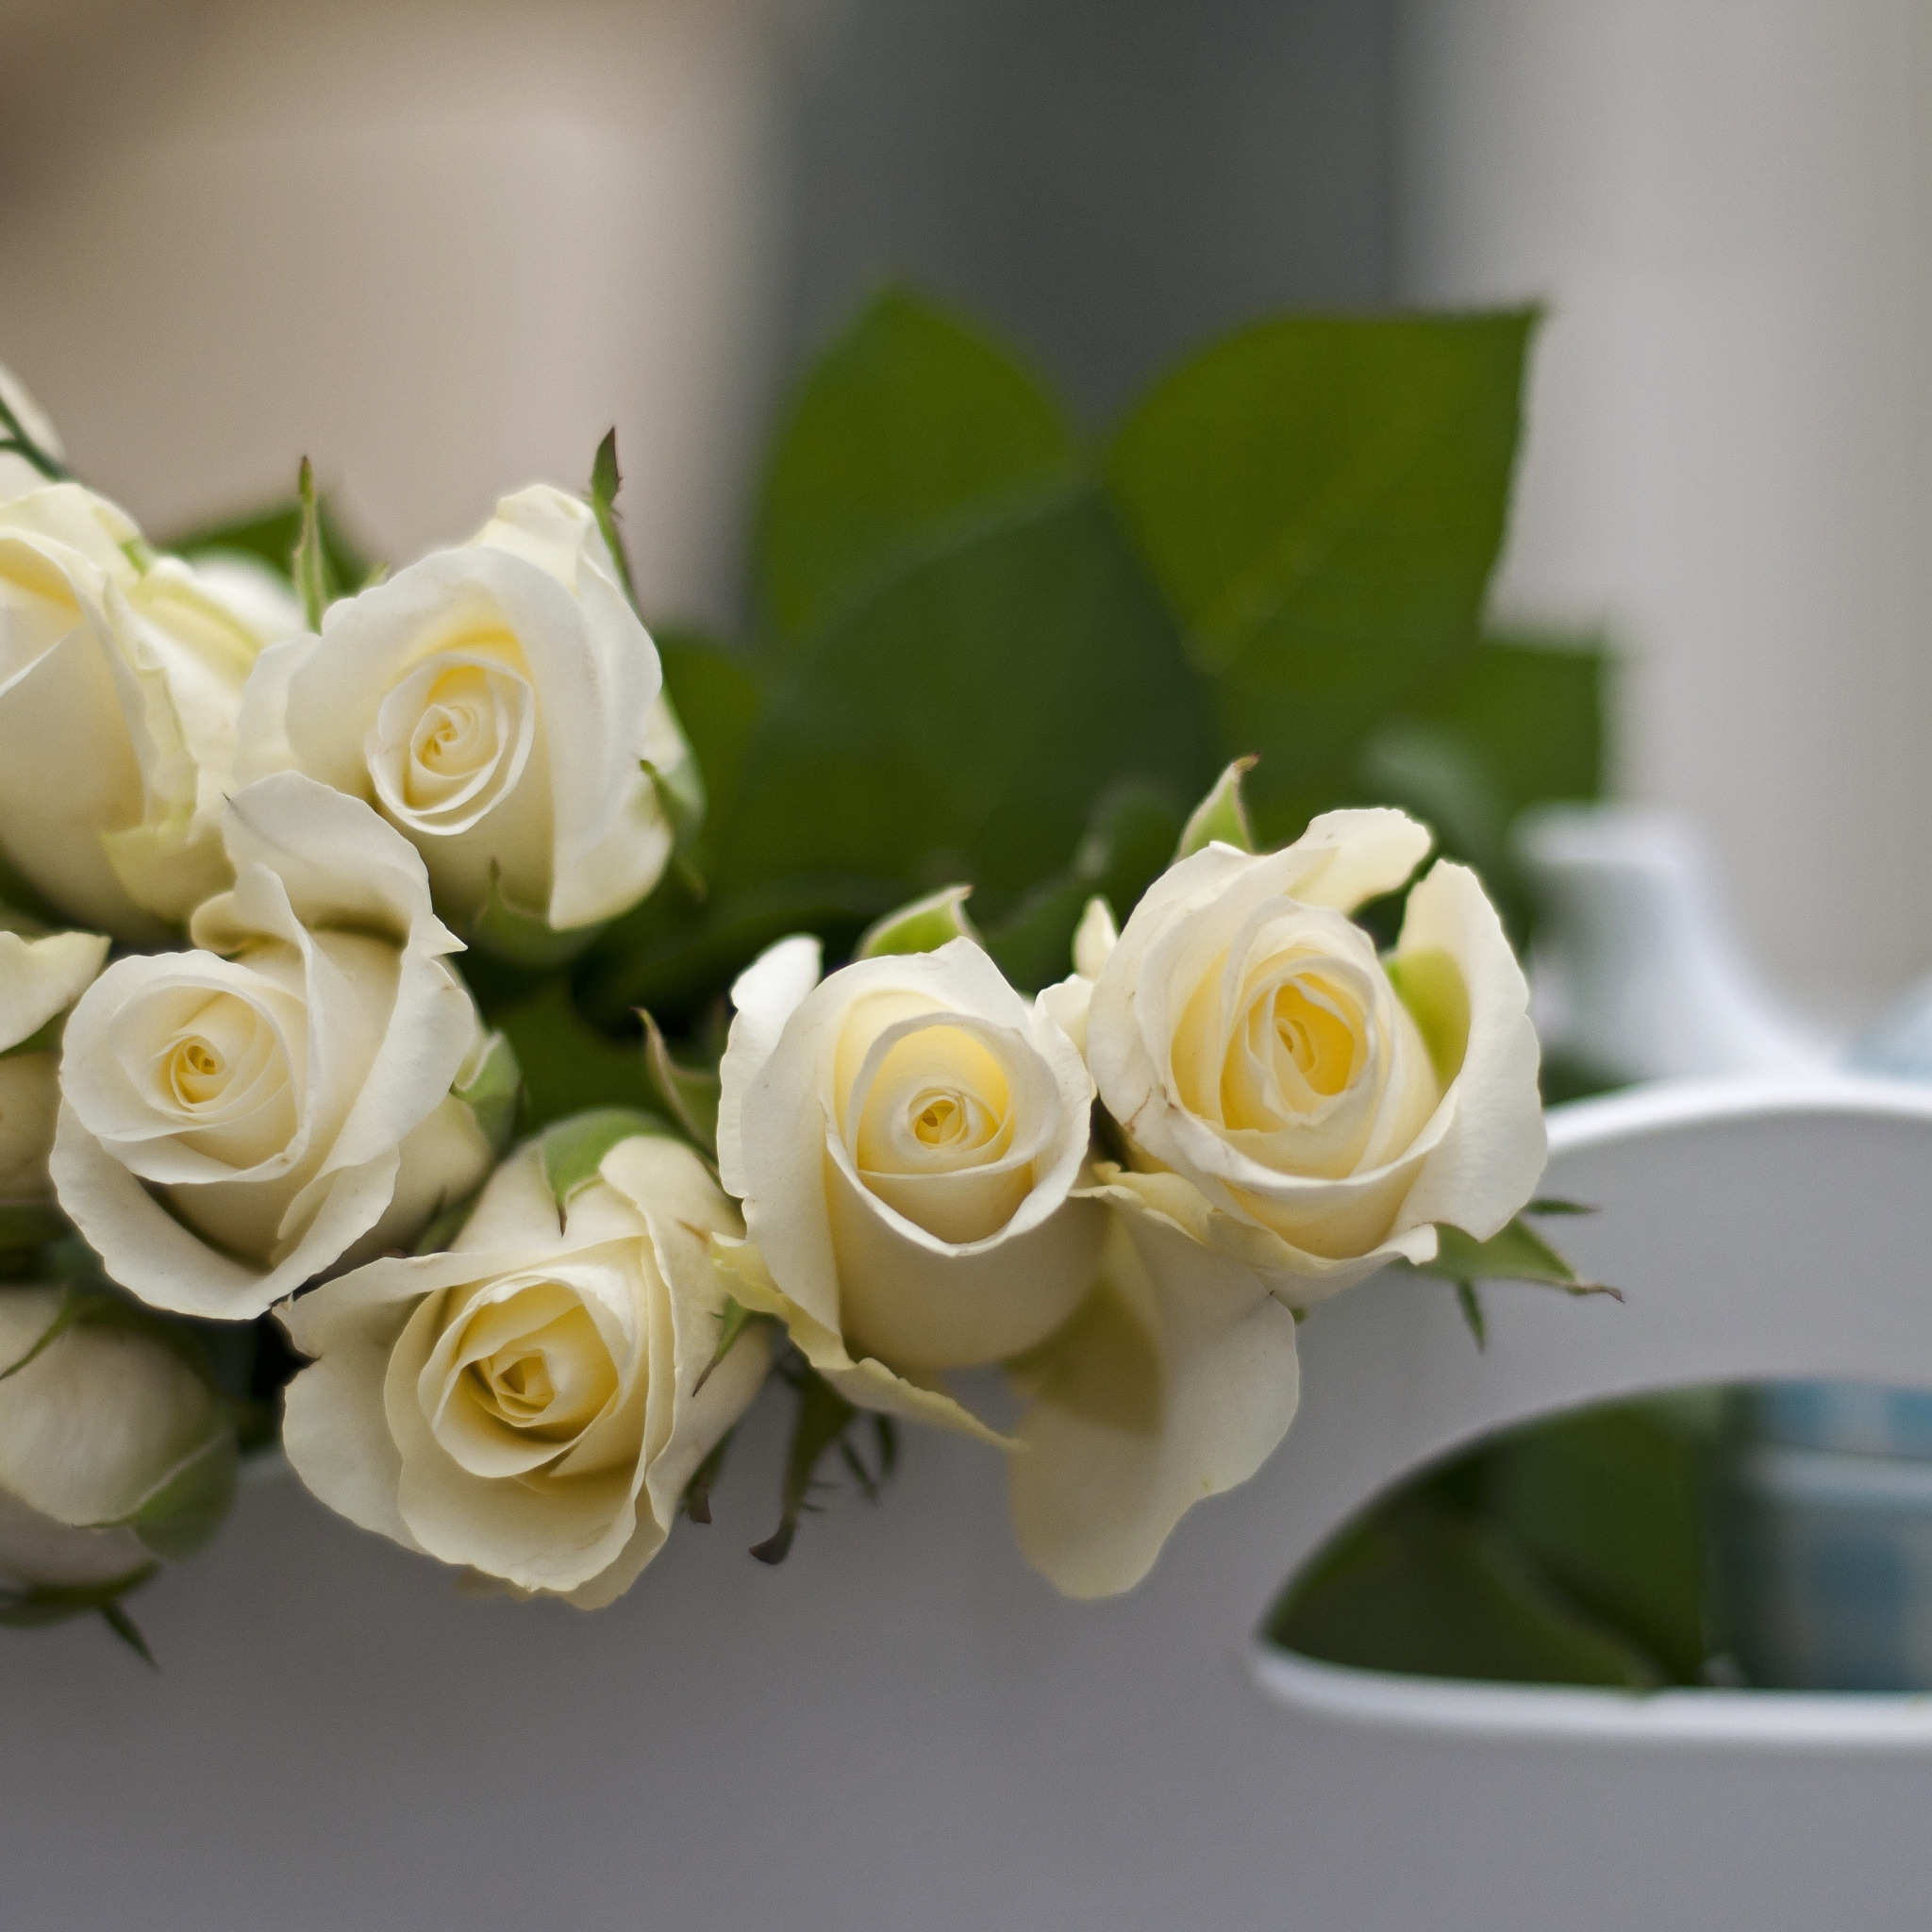 Пожелание доброго утра любимой девушке романтичные. Белые цветы. С добрым утром девушке. Пожелания с добрым утром любимой девушке. Букет белых роз на столе.